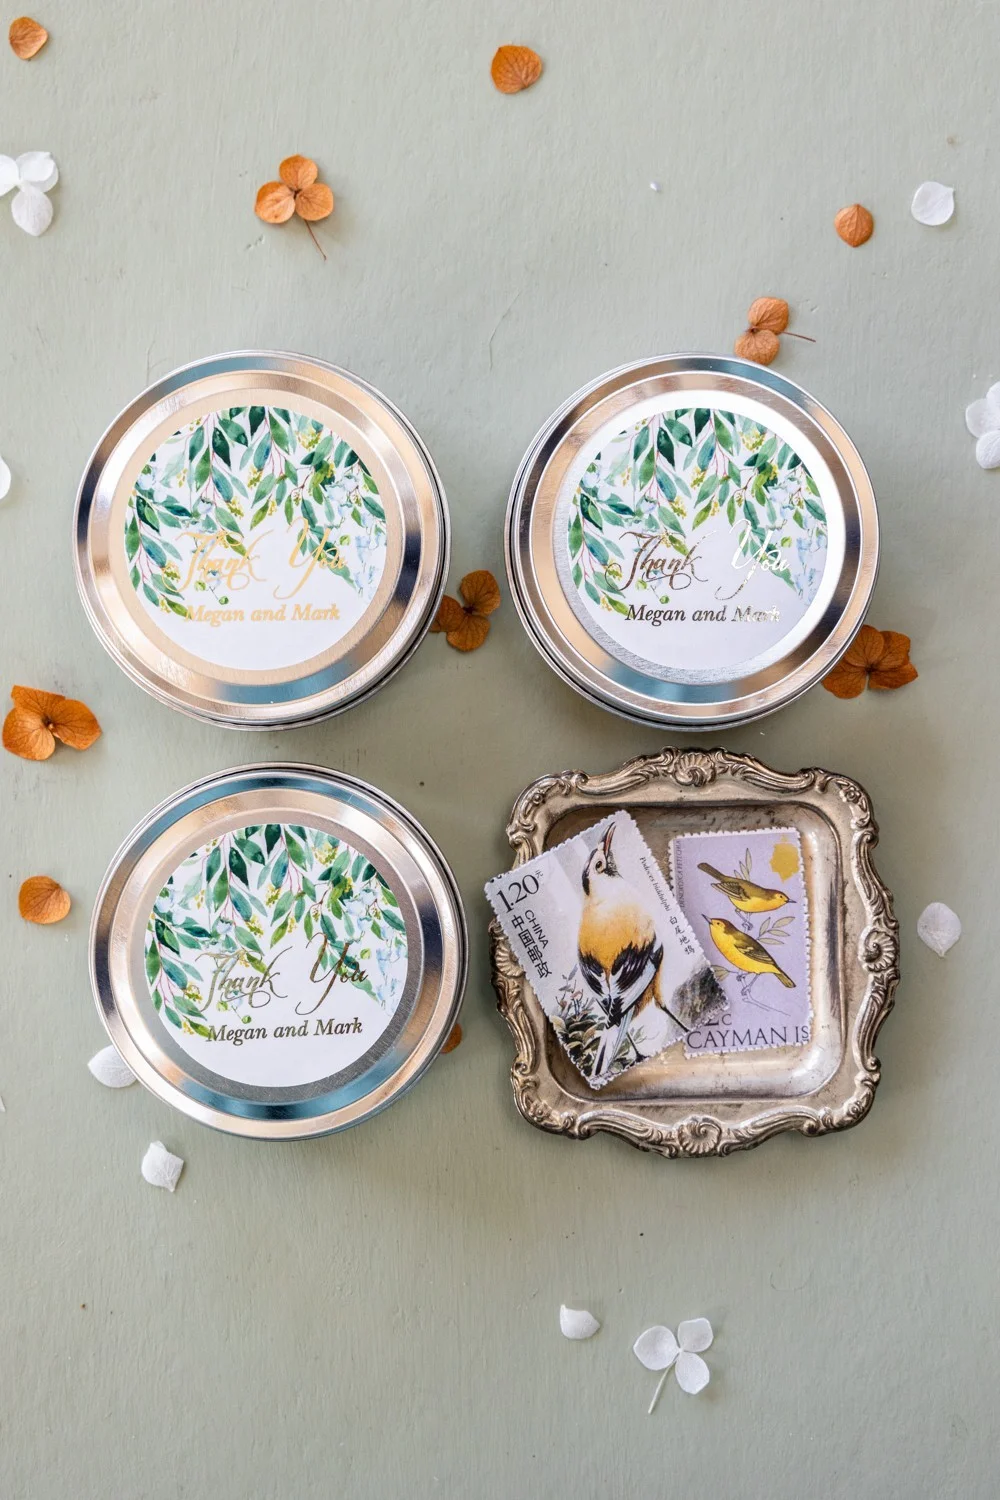 Bougies de cire de soja personnalisées et fabriquées à la main pour les invités de votre mariage, avec texte en or et muguet.